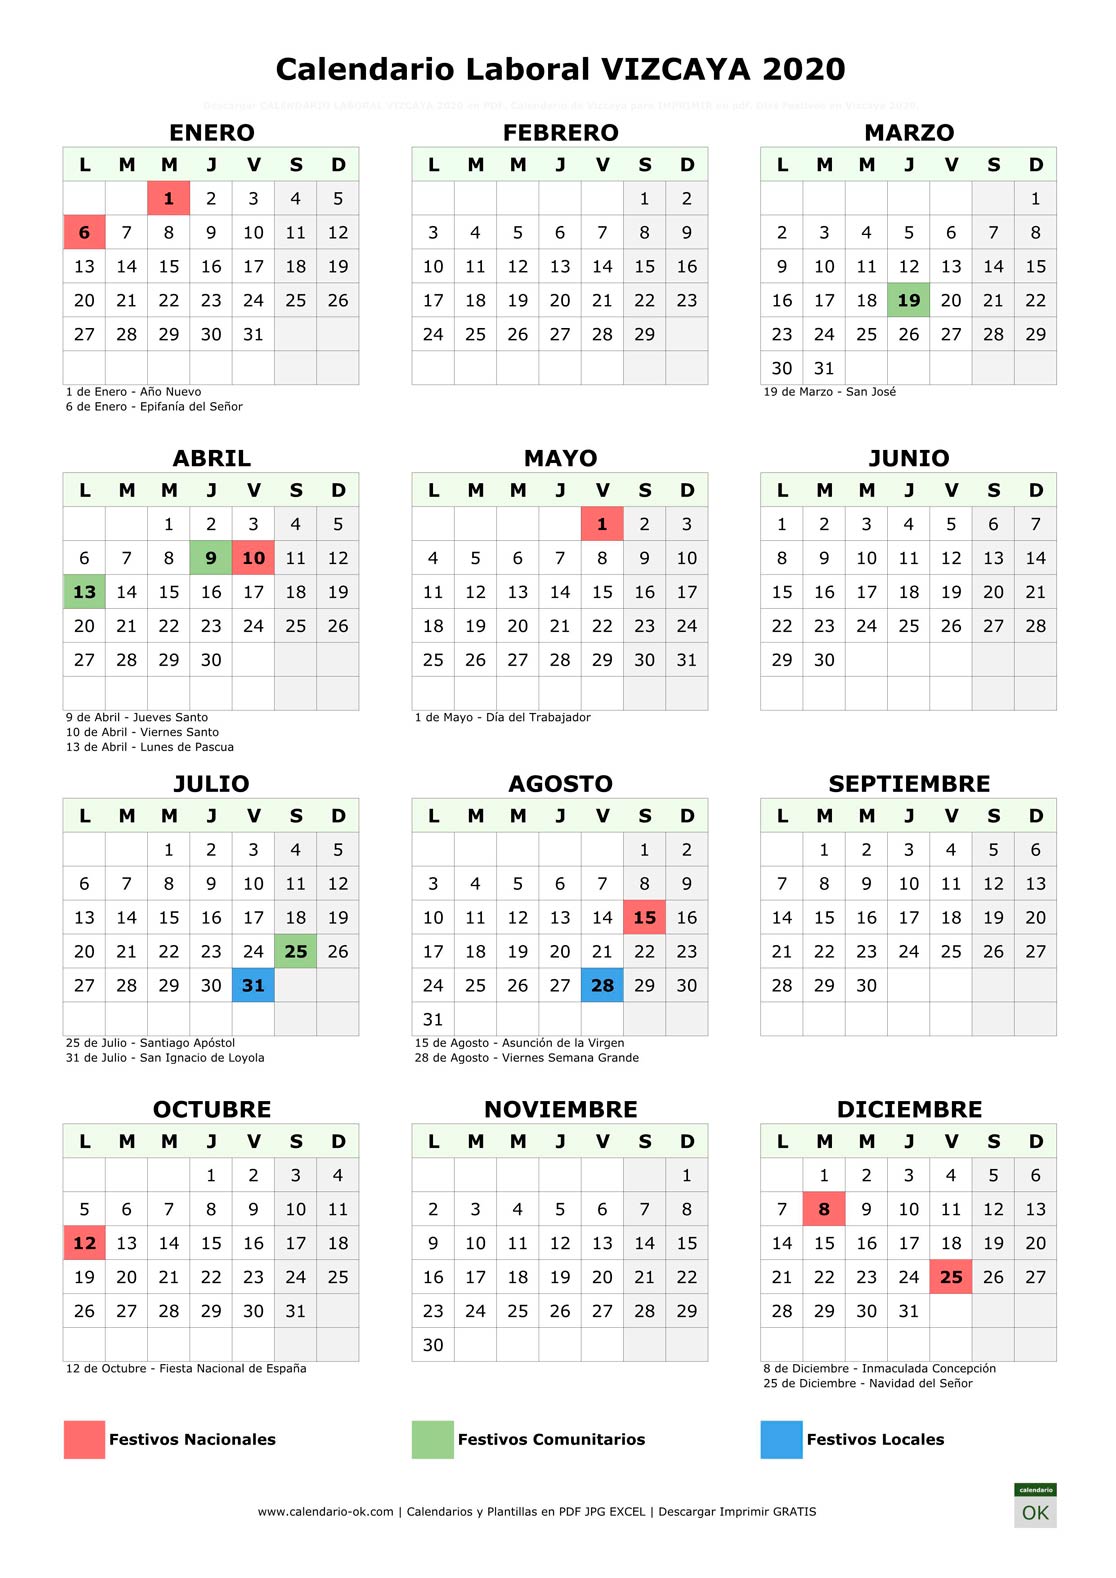 Calendario Laboral VIZCAYA 2020